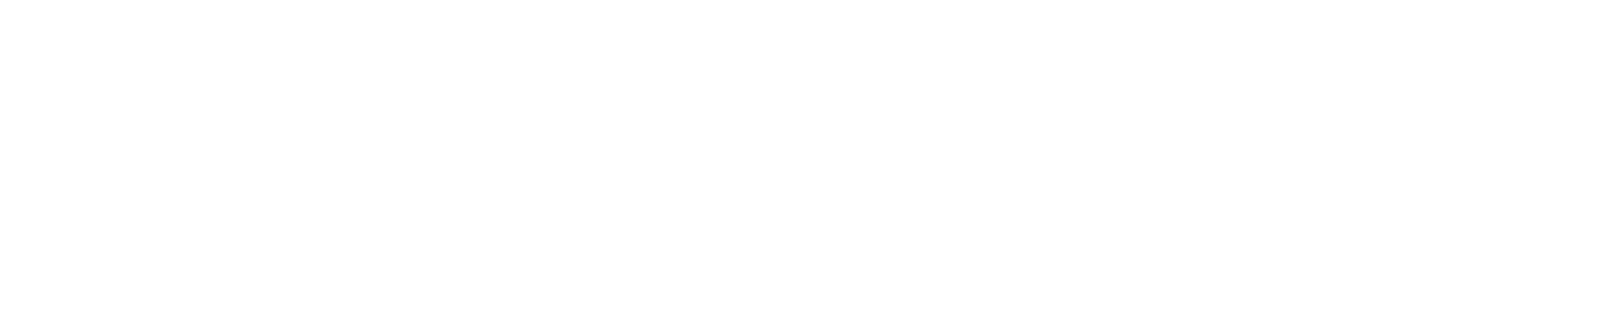 Maybank Logo groß für dunkle Hintergründe (transparentes PNG)